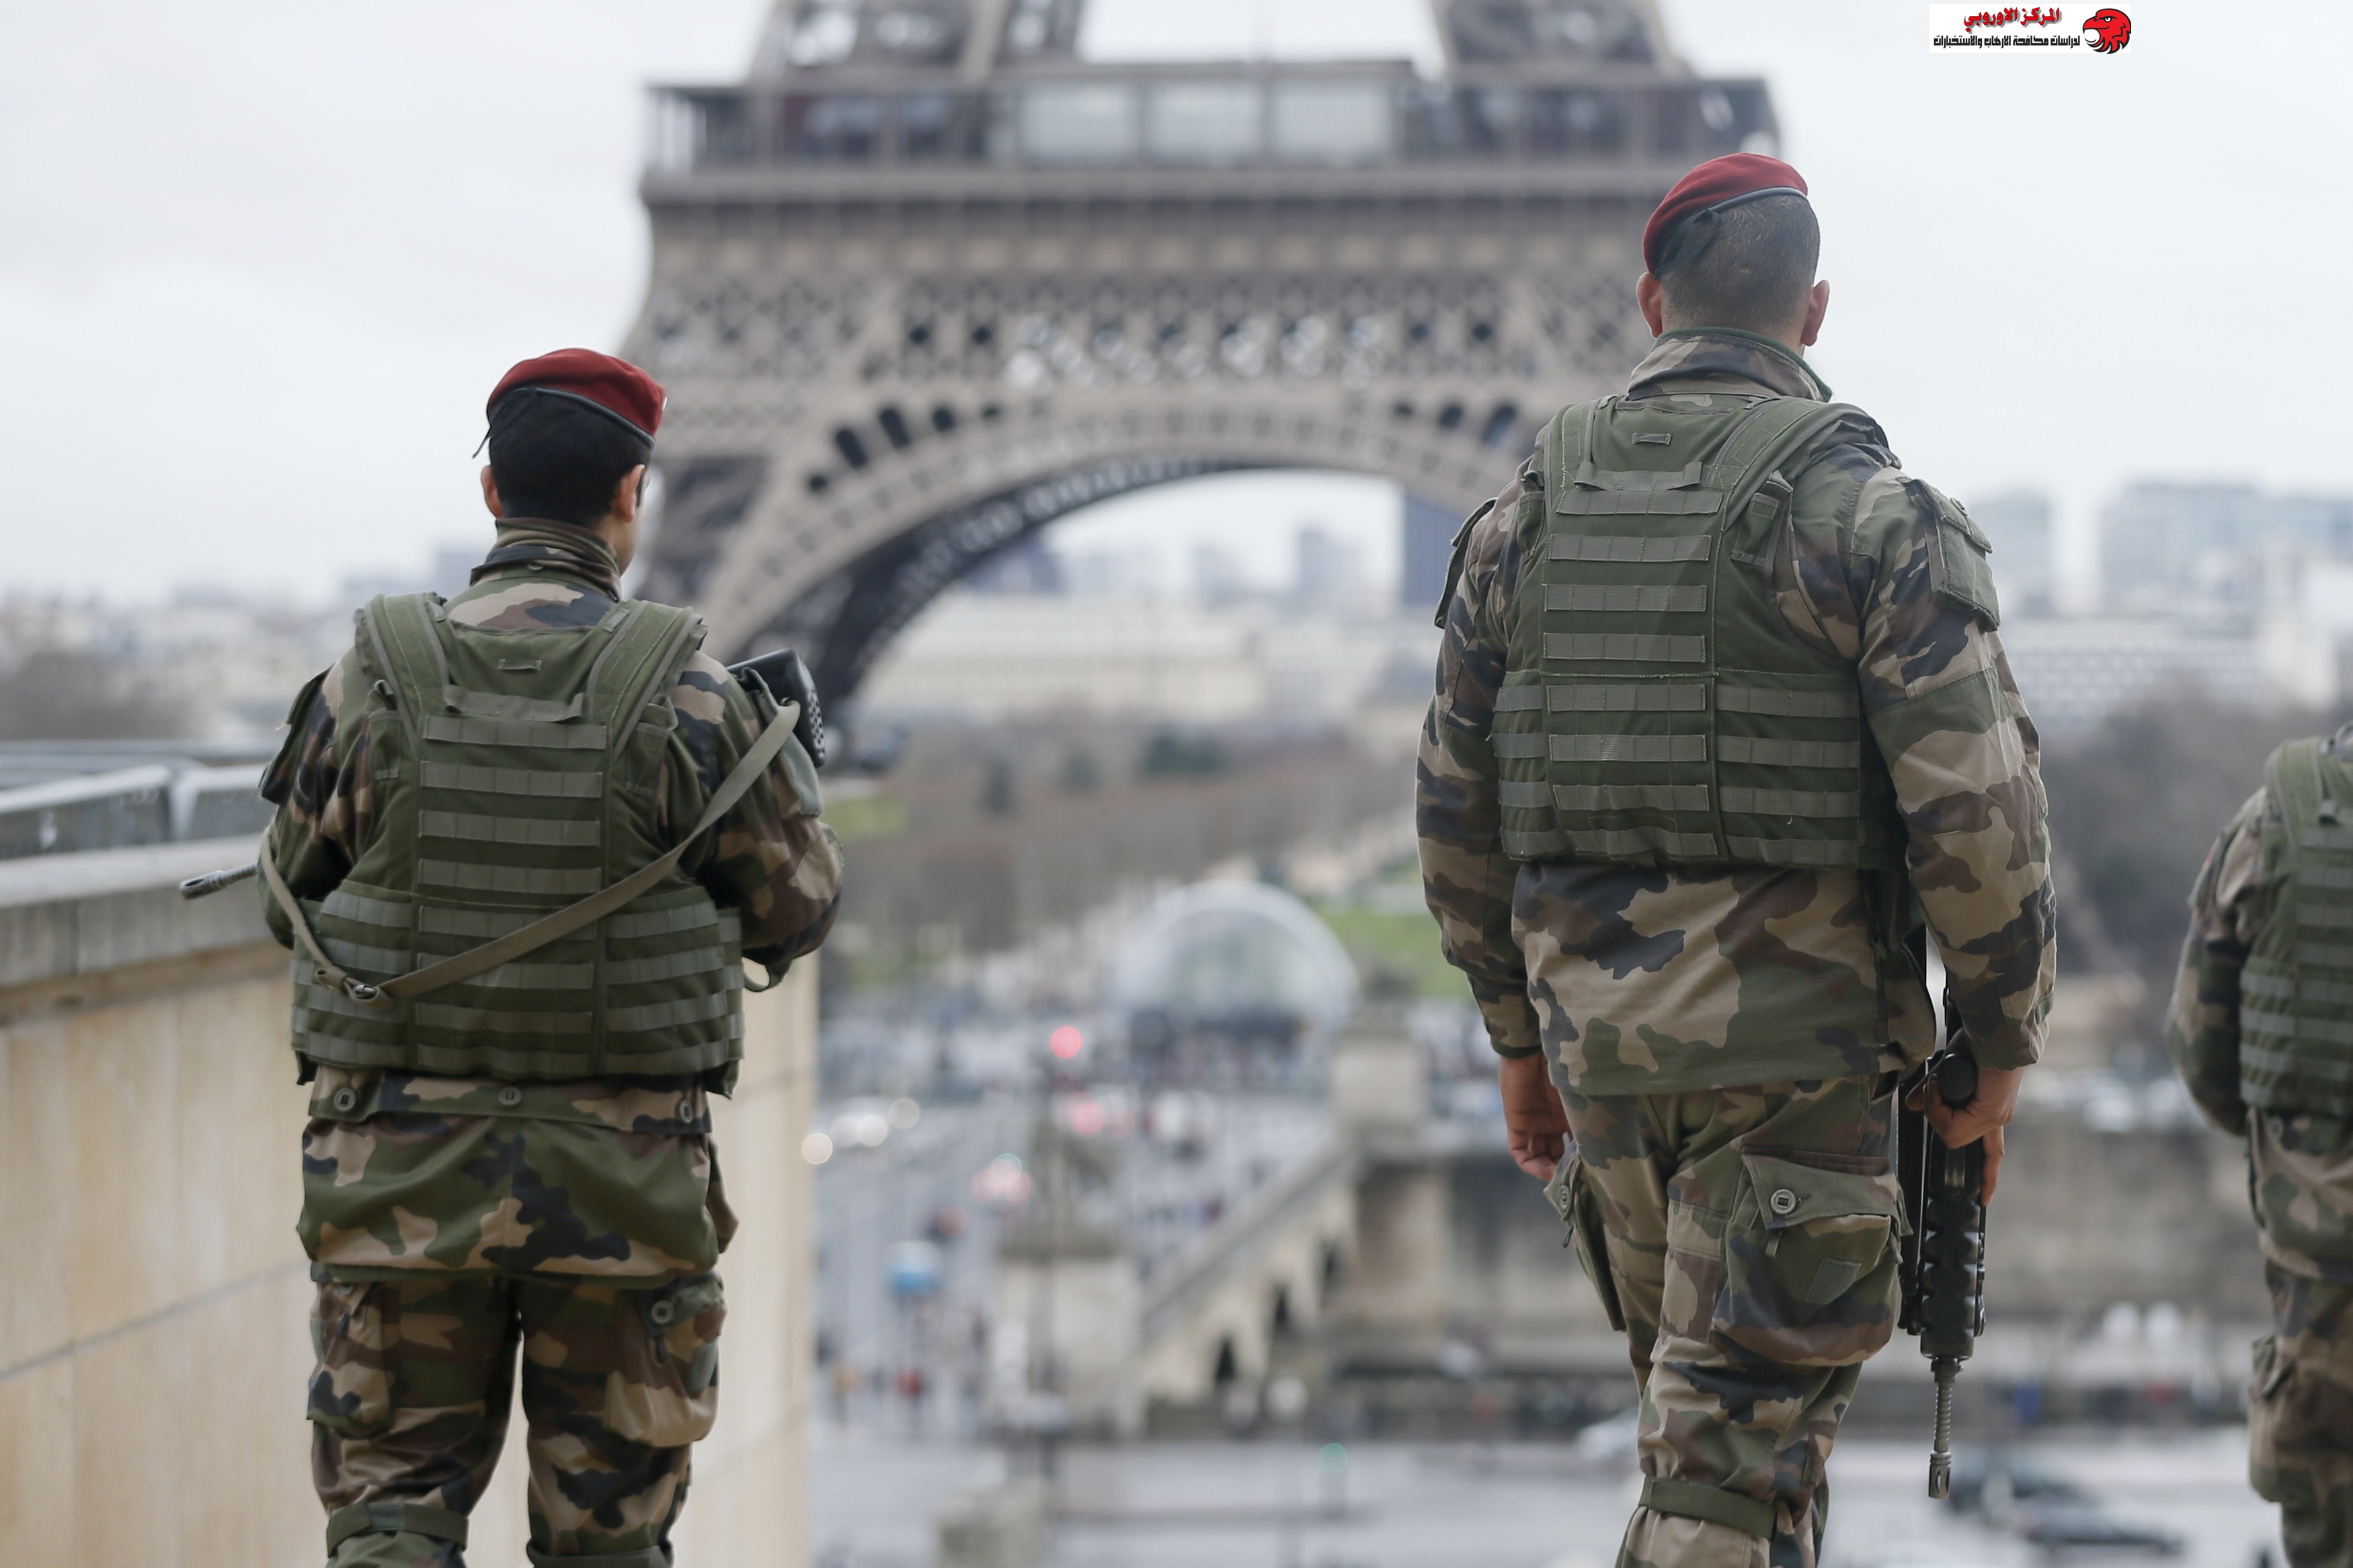  كيف اكتشفت فرنسا متطرفين خططوا لتسميم مسلمين؟